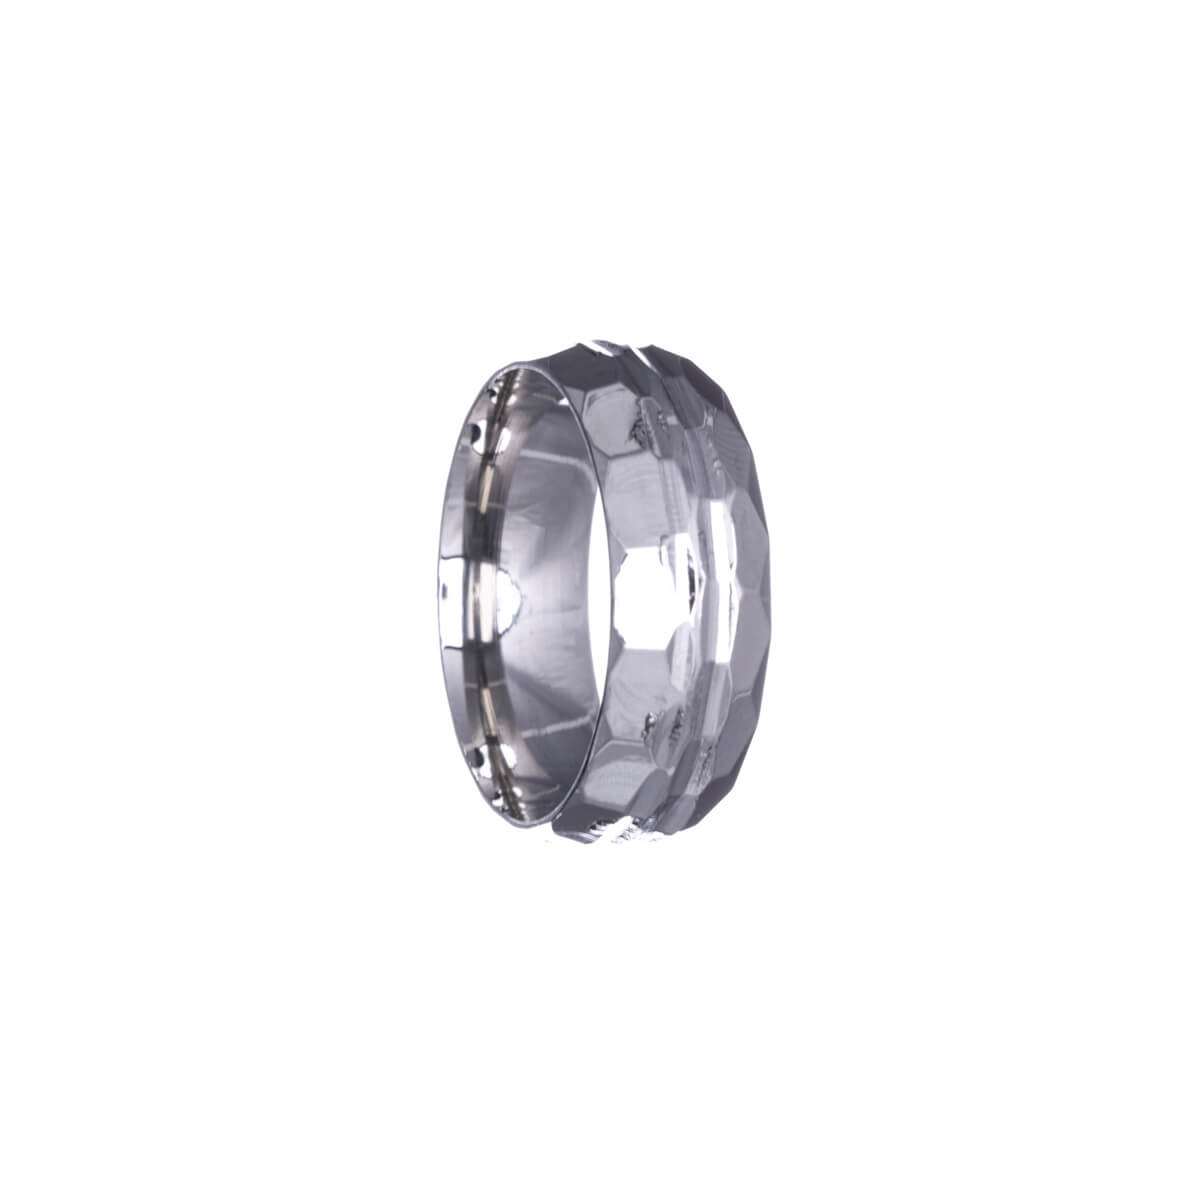 Polished bevel ring 8mm (steel 316L)